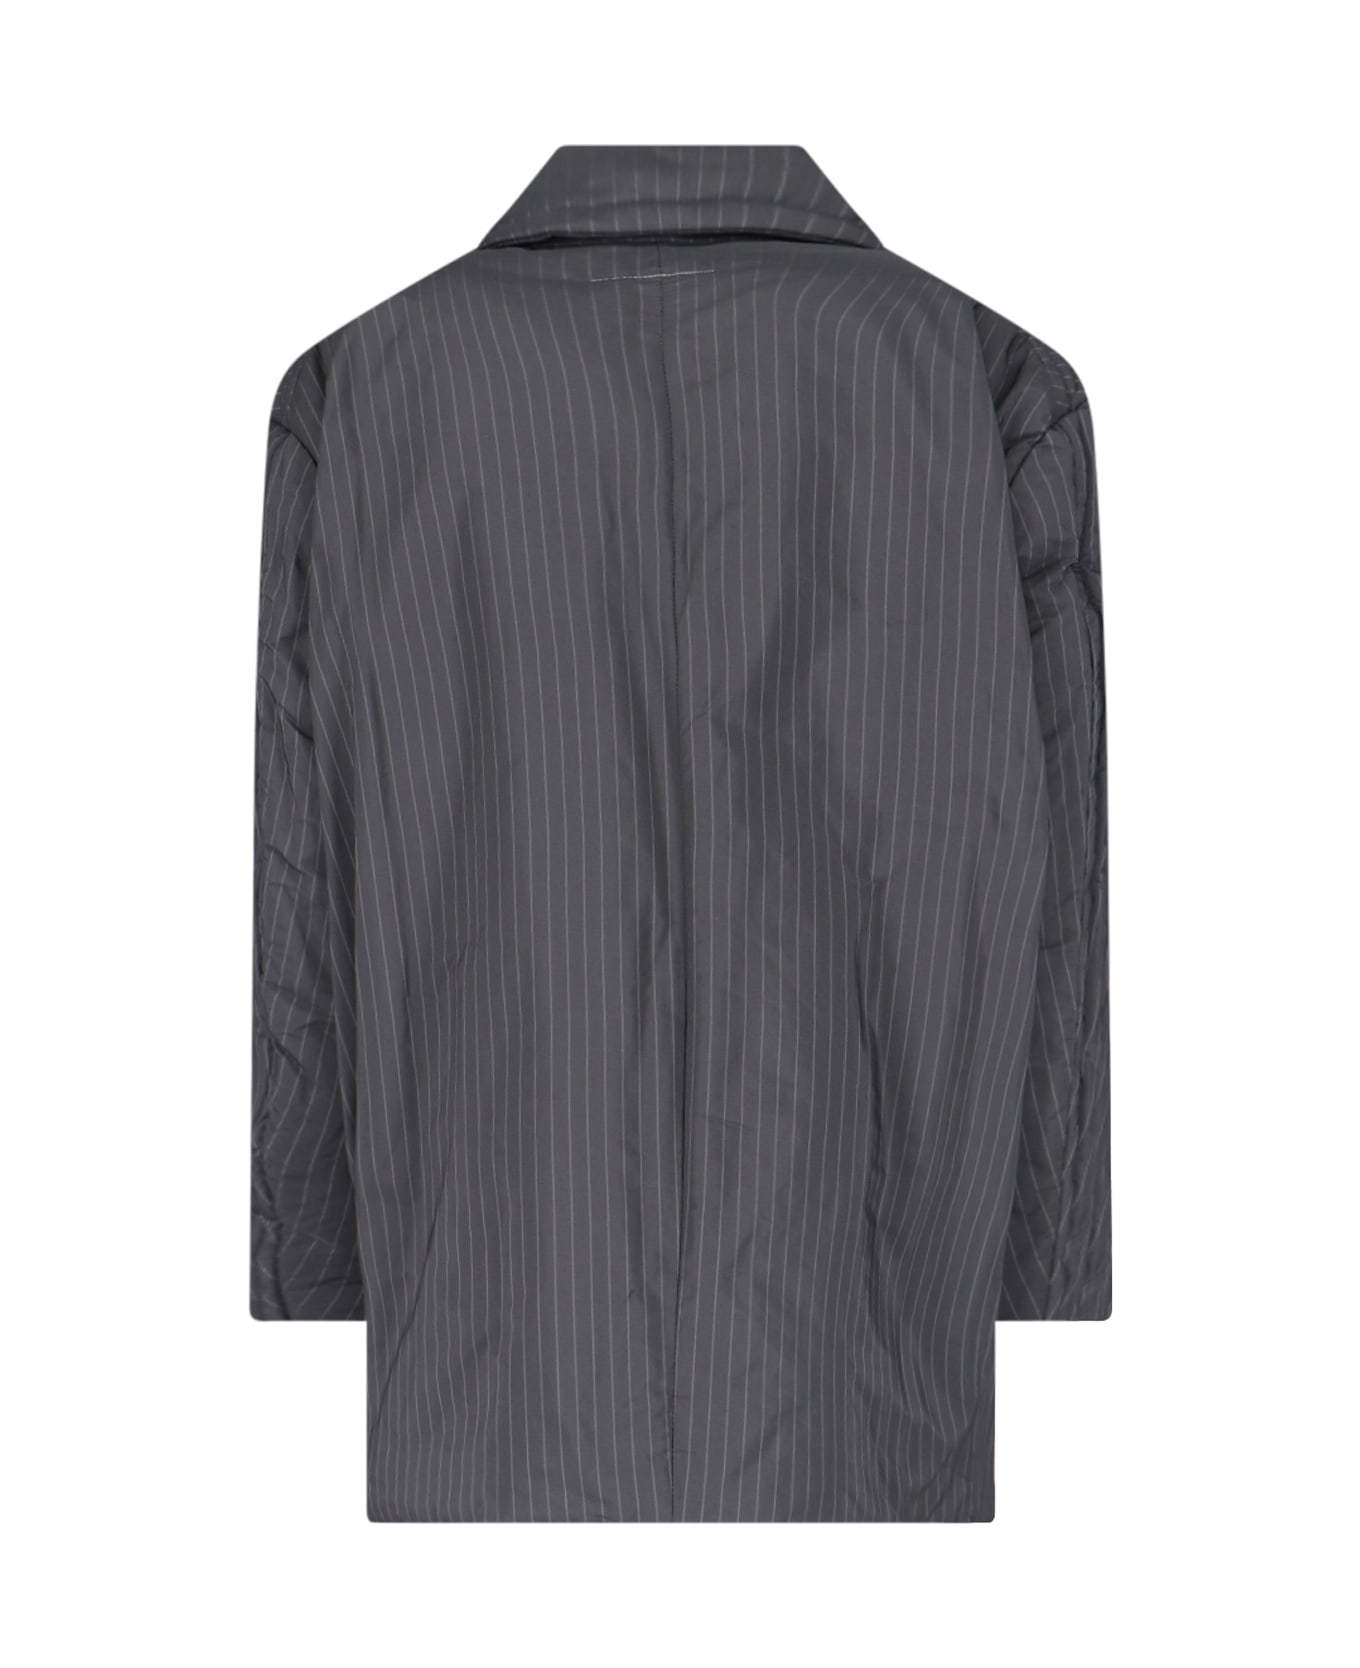 MM6 Maison Margiela Padded Blazer Jacket - Black